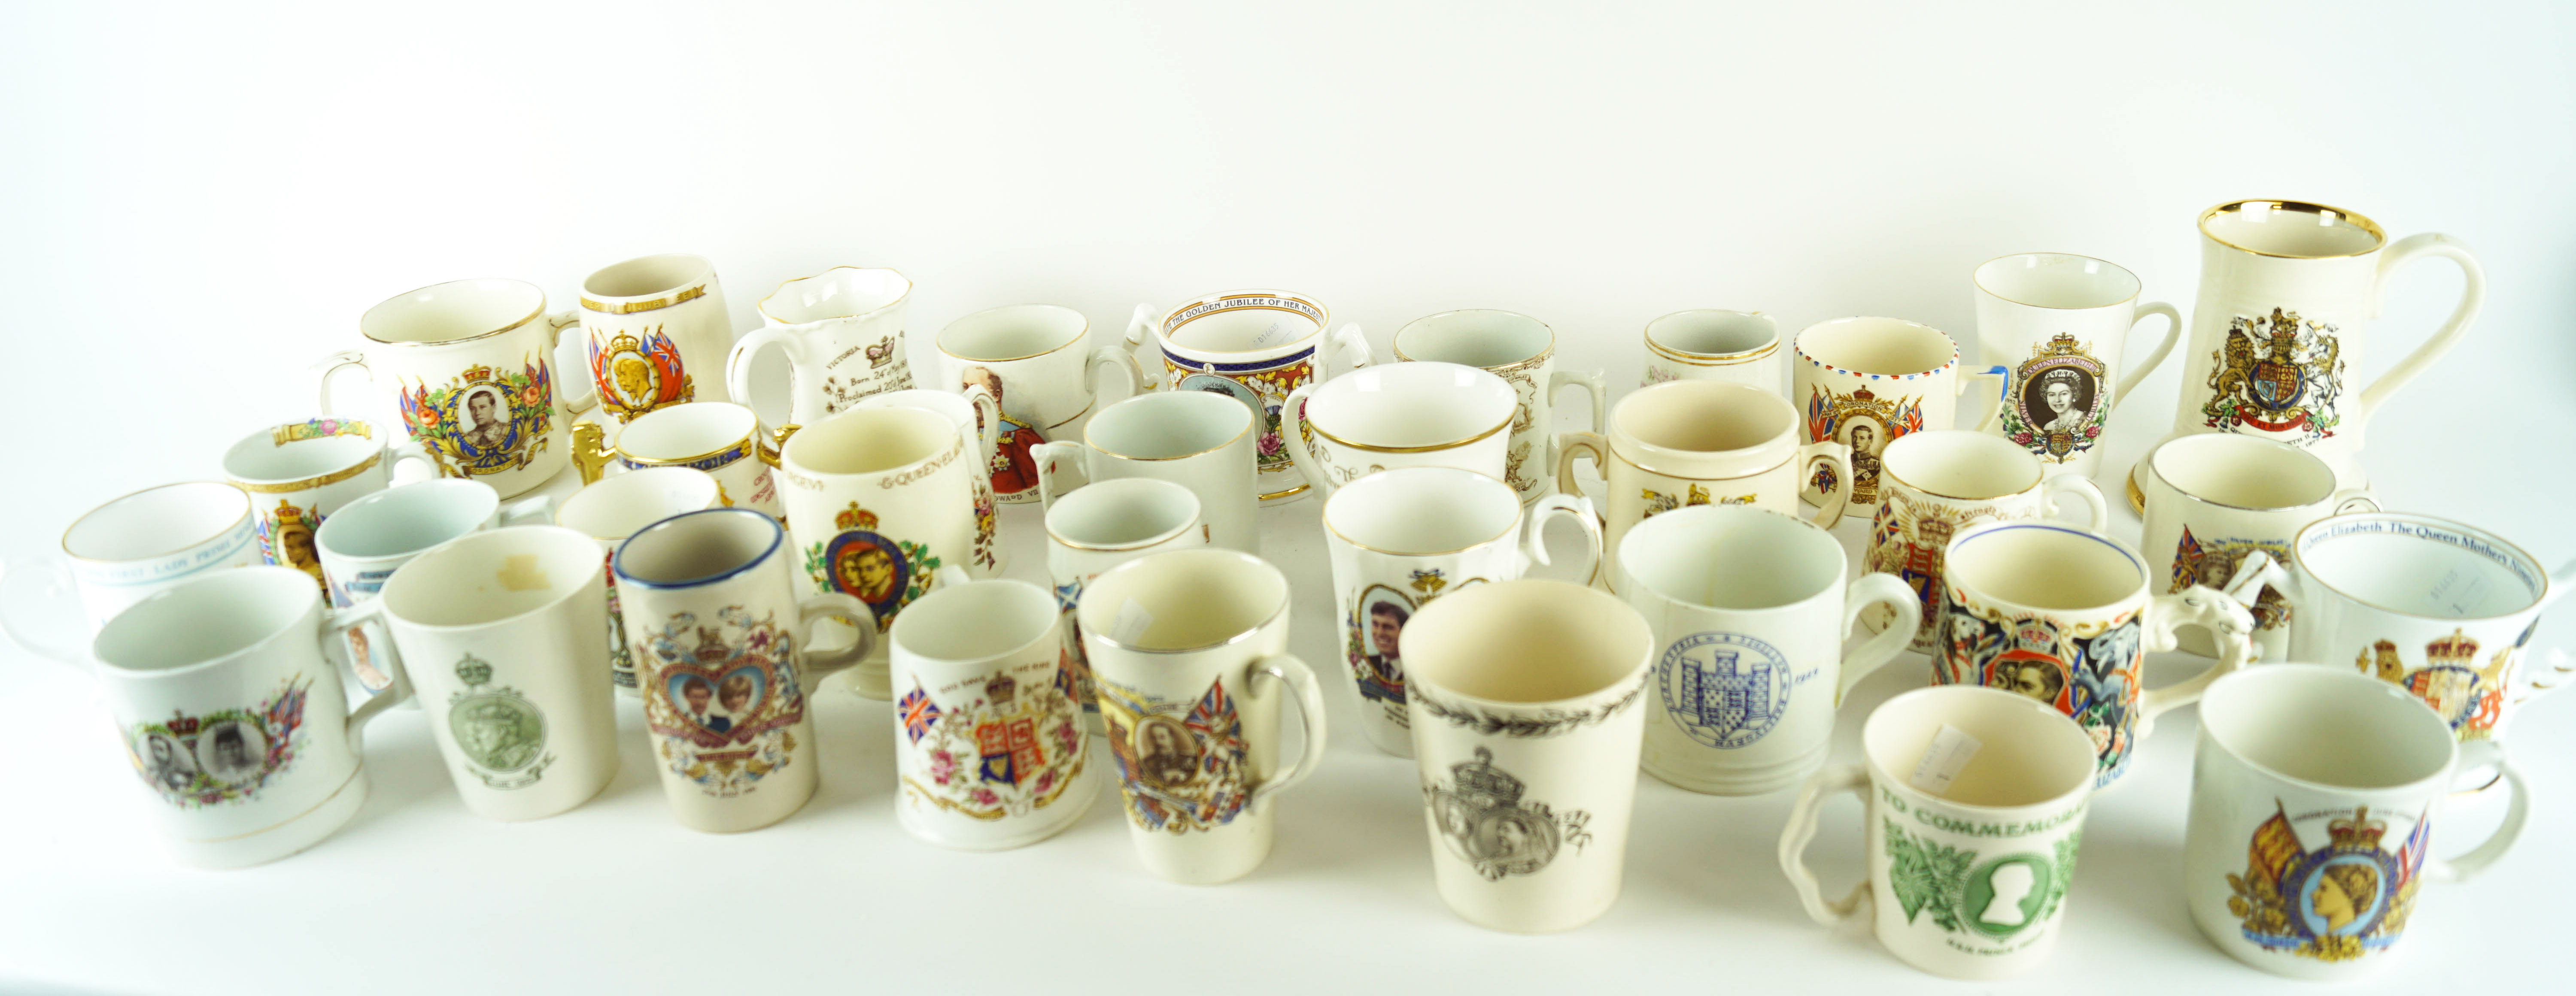 A group of Coronation mugs